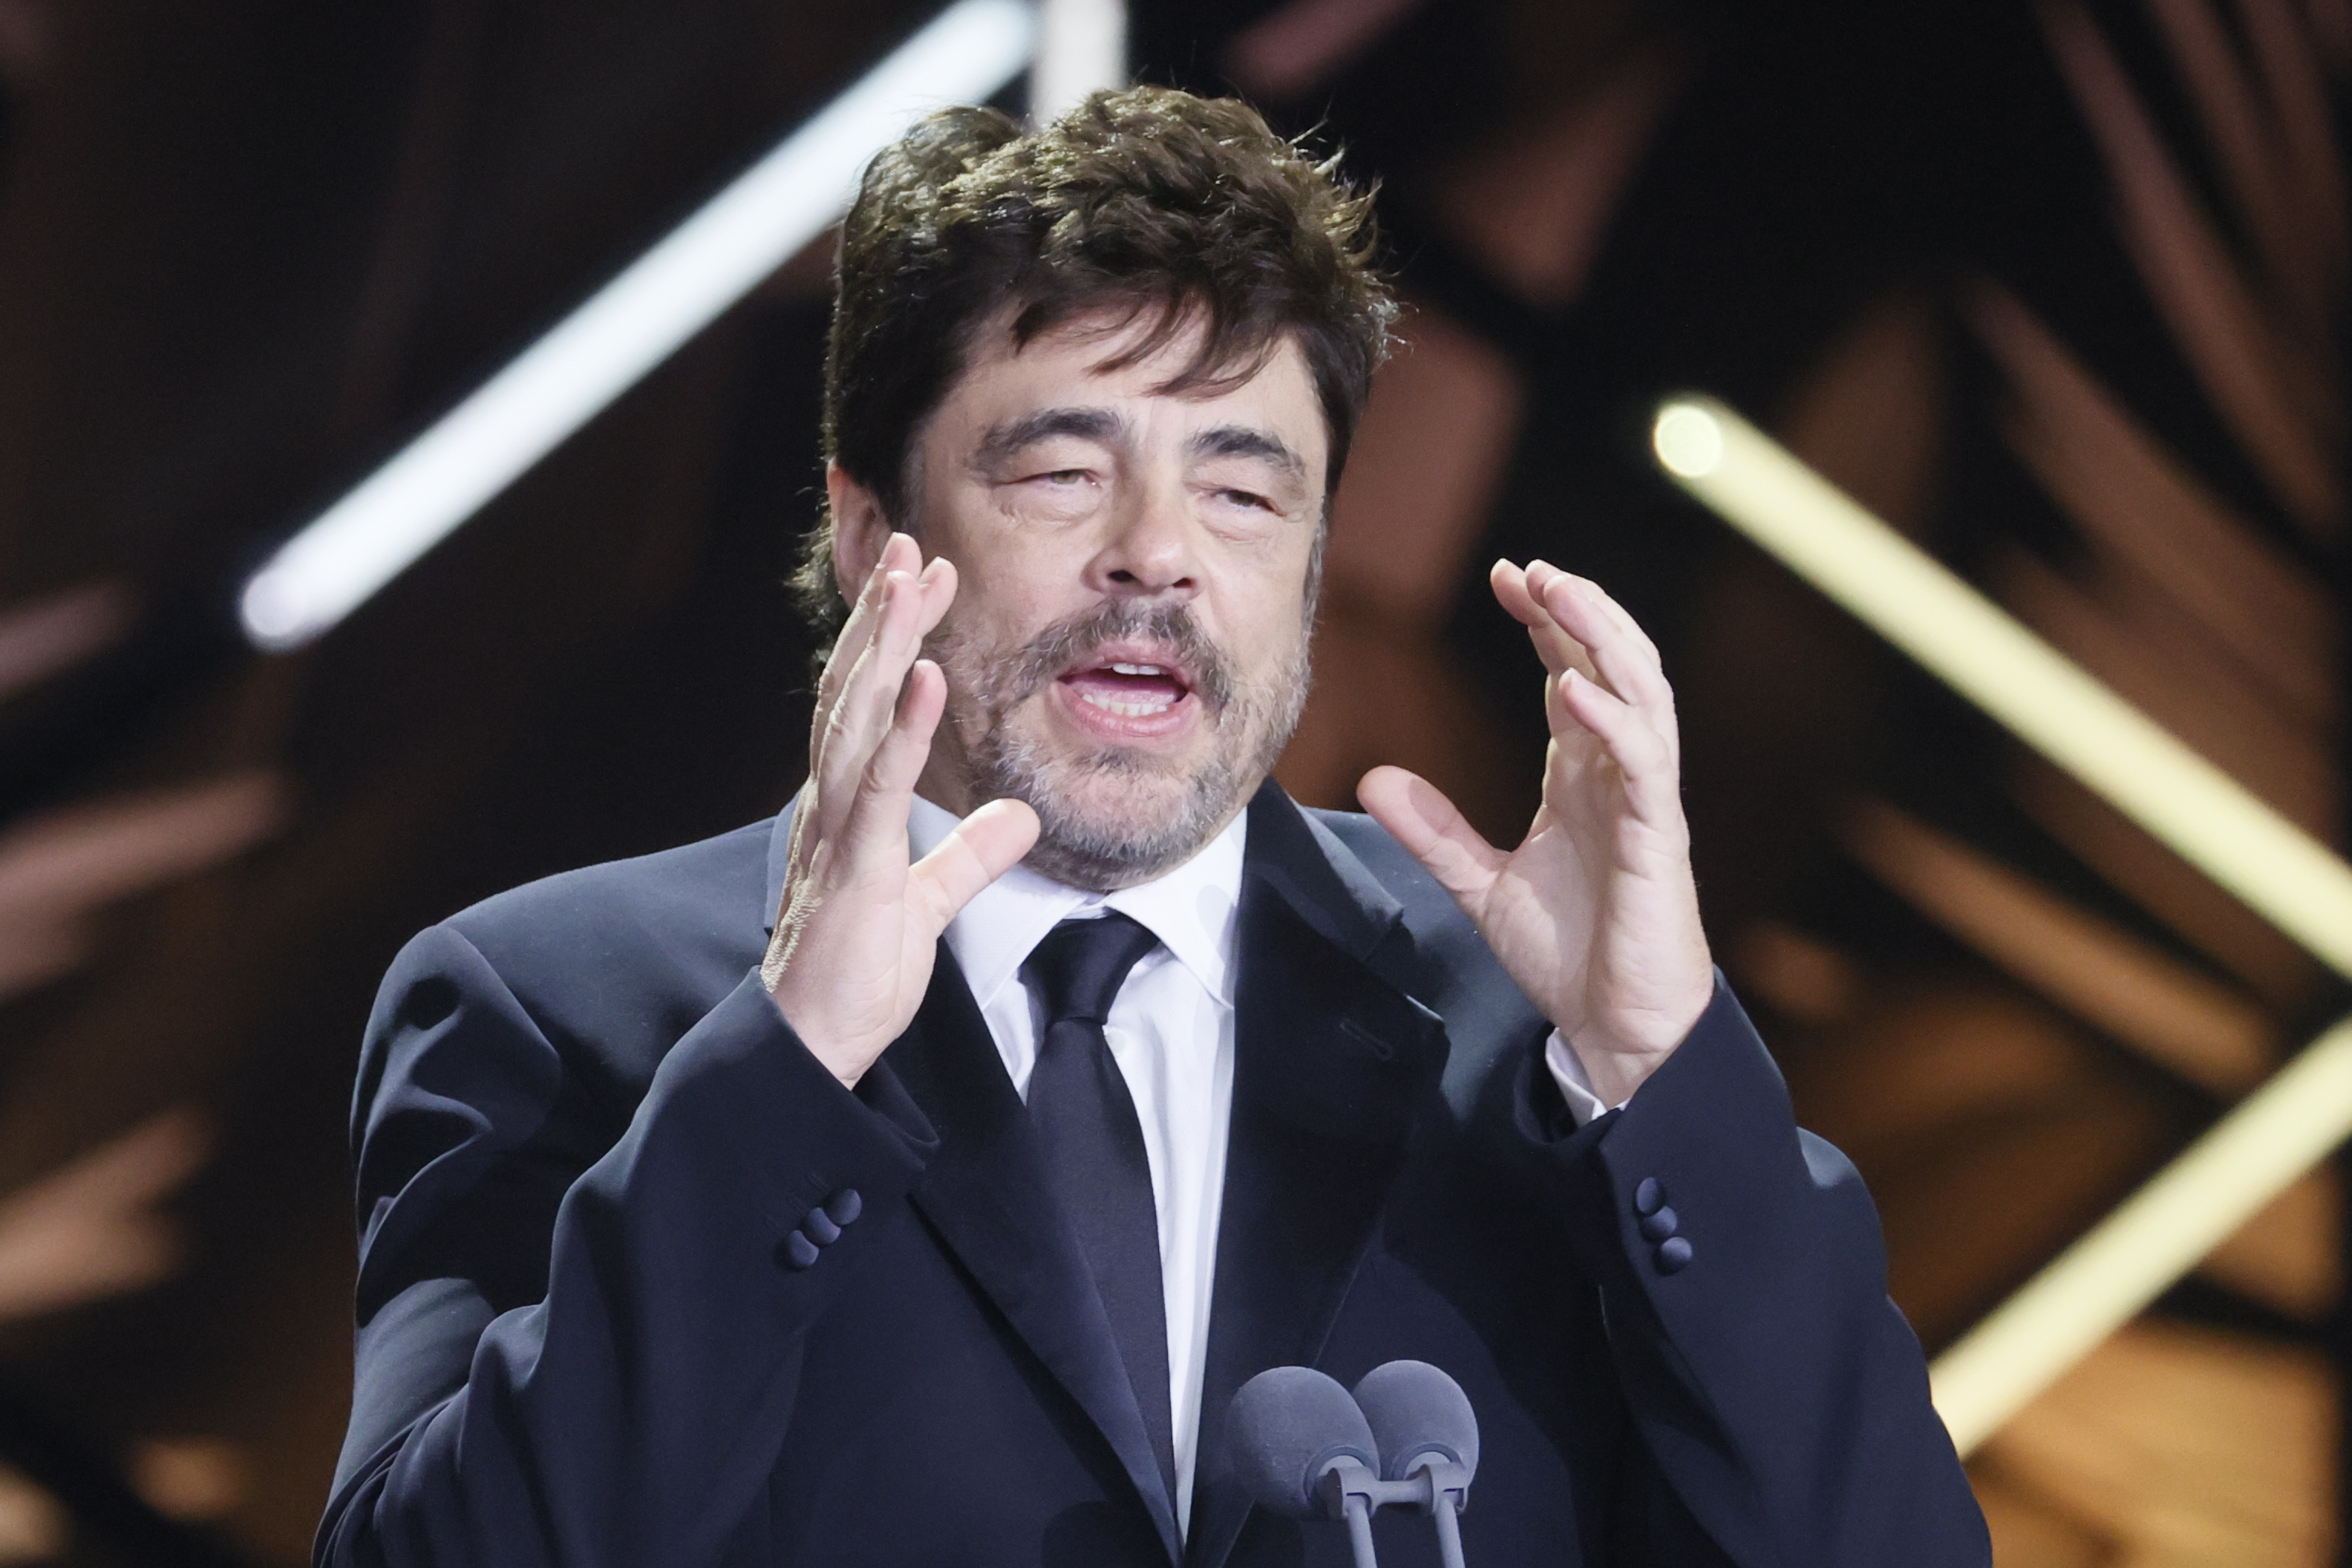 El actor Benicio del Toro recibe el Premio Platino de Honor en la ceremonia de entrega de los Premios Platino, en su décima edición, este sábado en Madrid. (Foto Prensa Libre: EFE/MARISCAL)